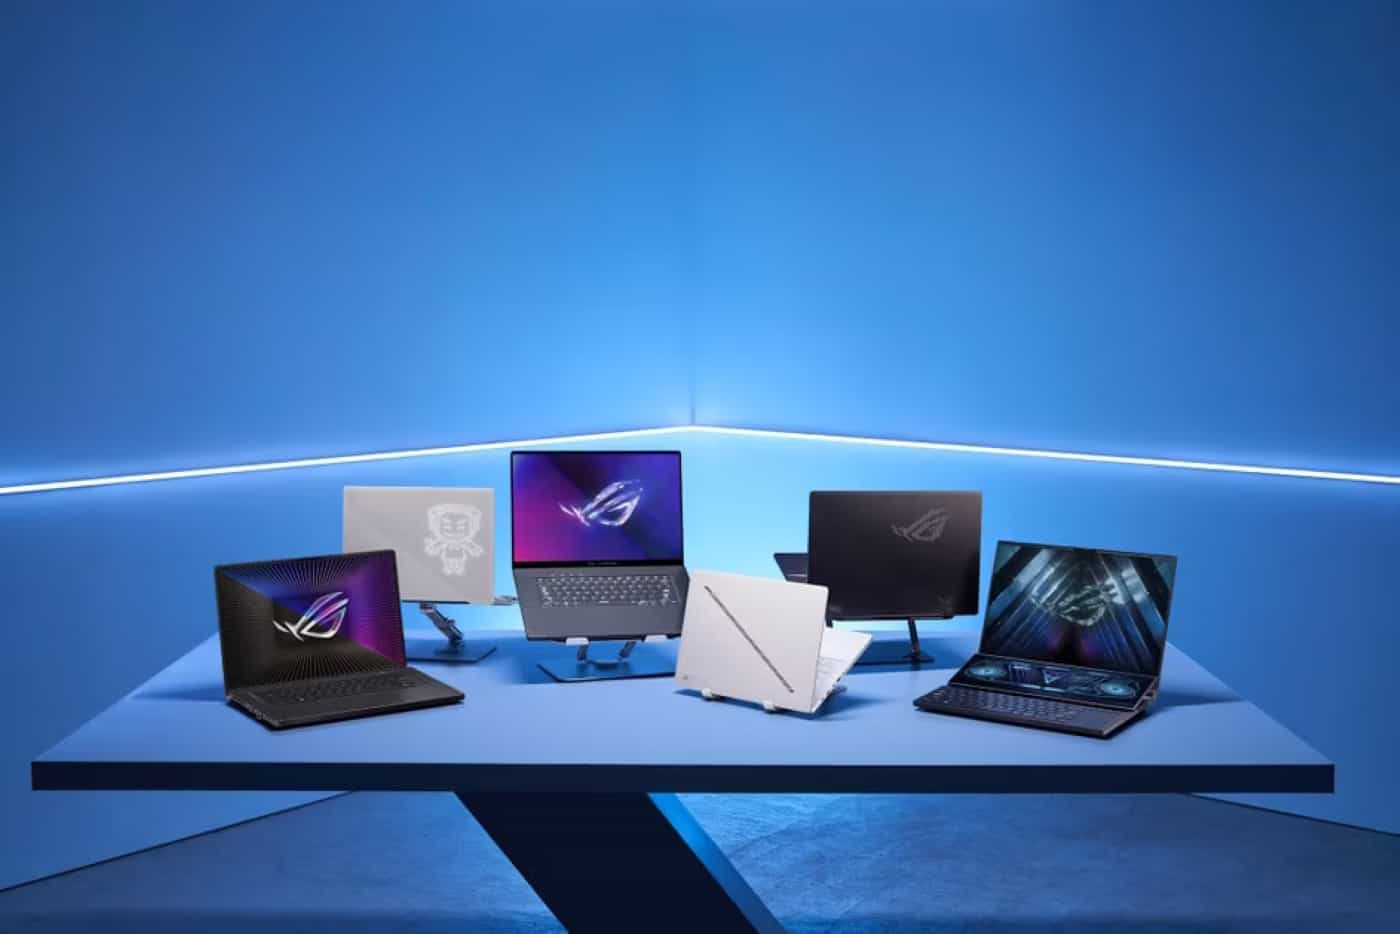 Asus revela dos nuevas computadoras portátiles ROG Zephyrus con pantallas OLED de 2.5K y 3K